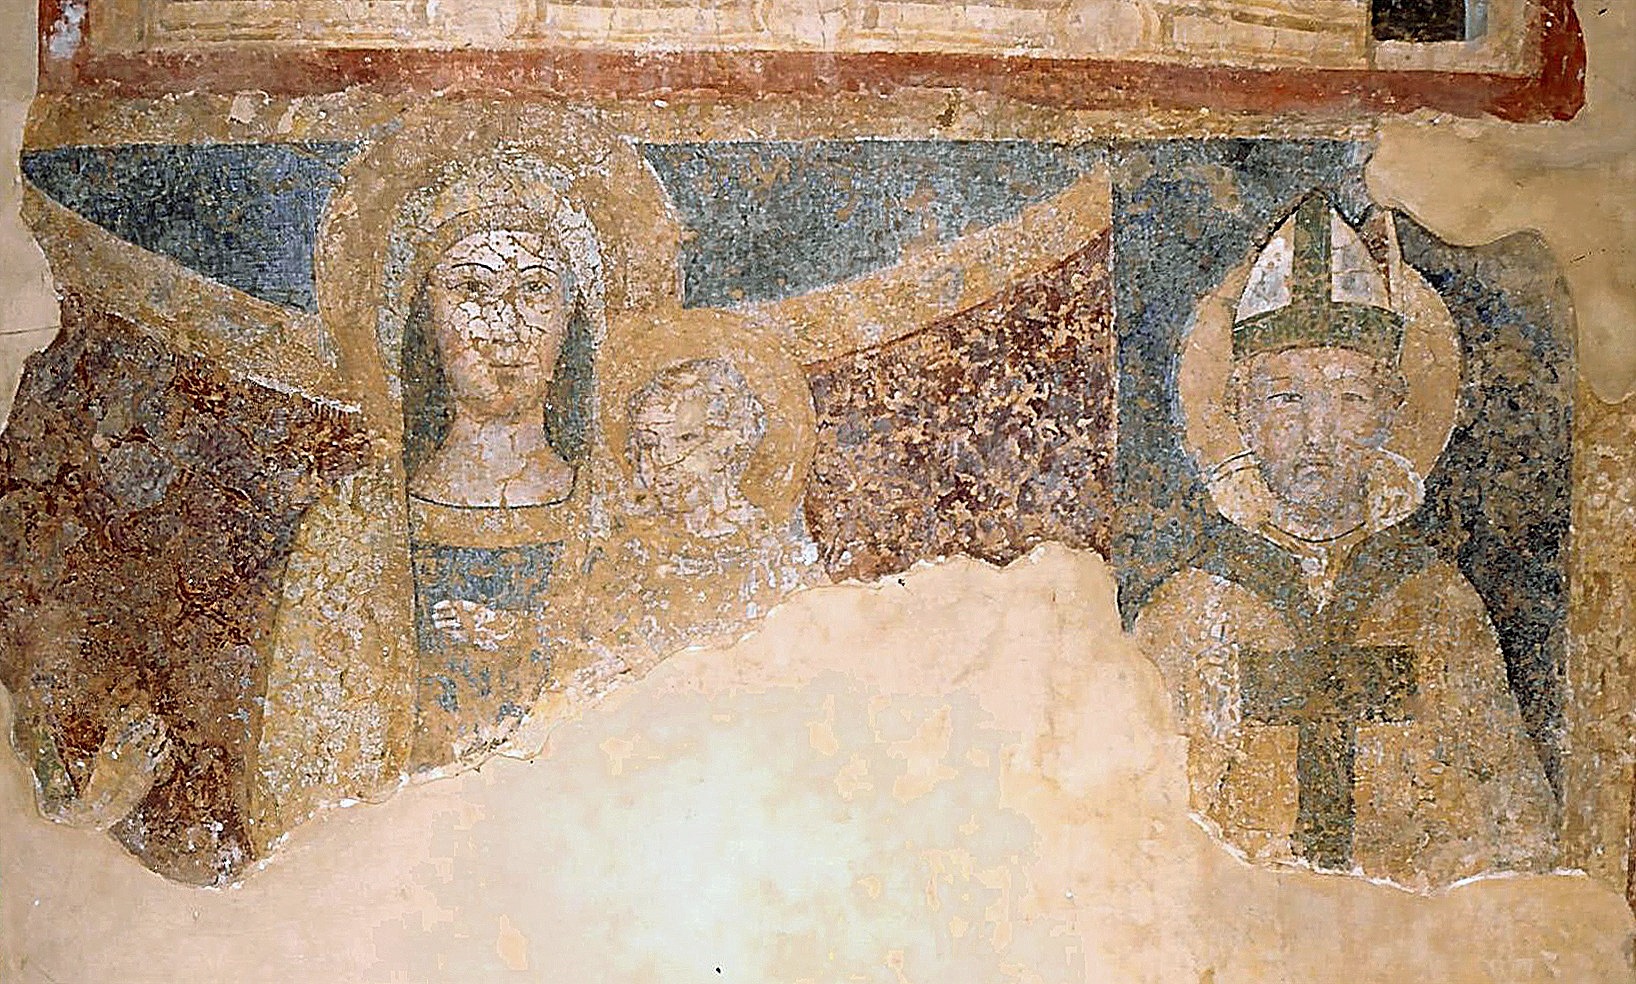 ill.14: Scuola privernate, sec. XV, Madonna con Bambino e Santo vescovo, affresco